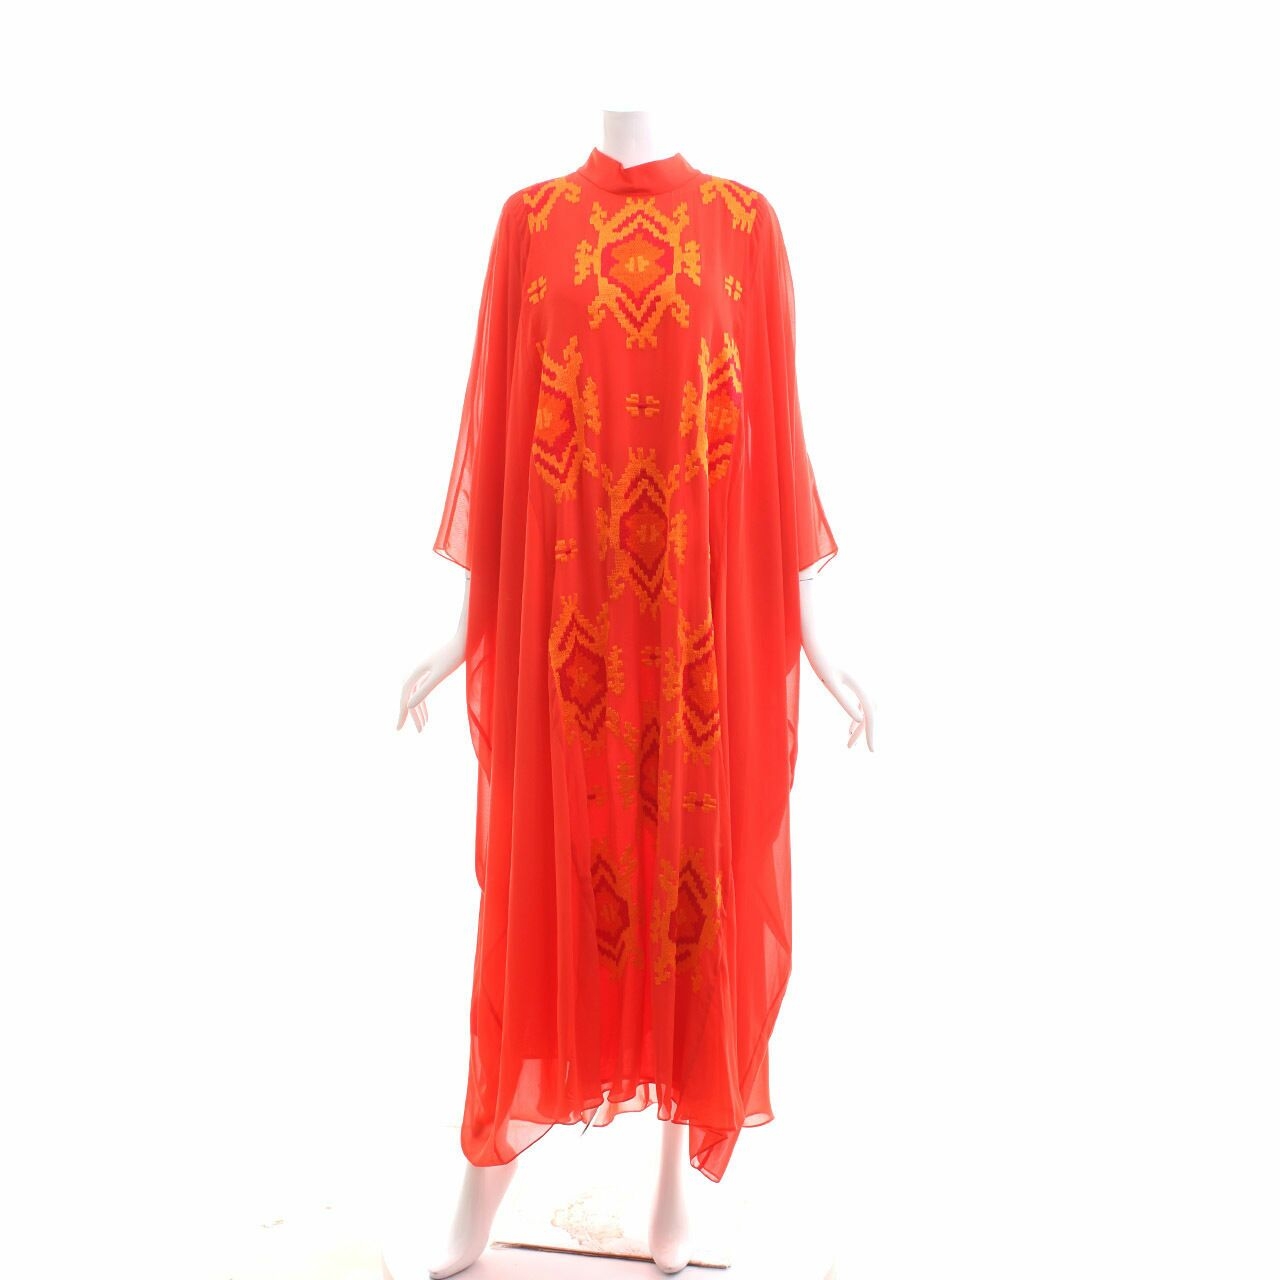 Kamilaa by Itang Yunasz Red Long Dress